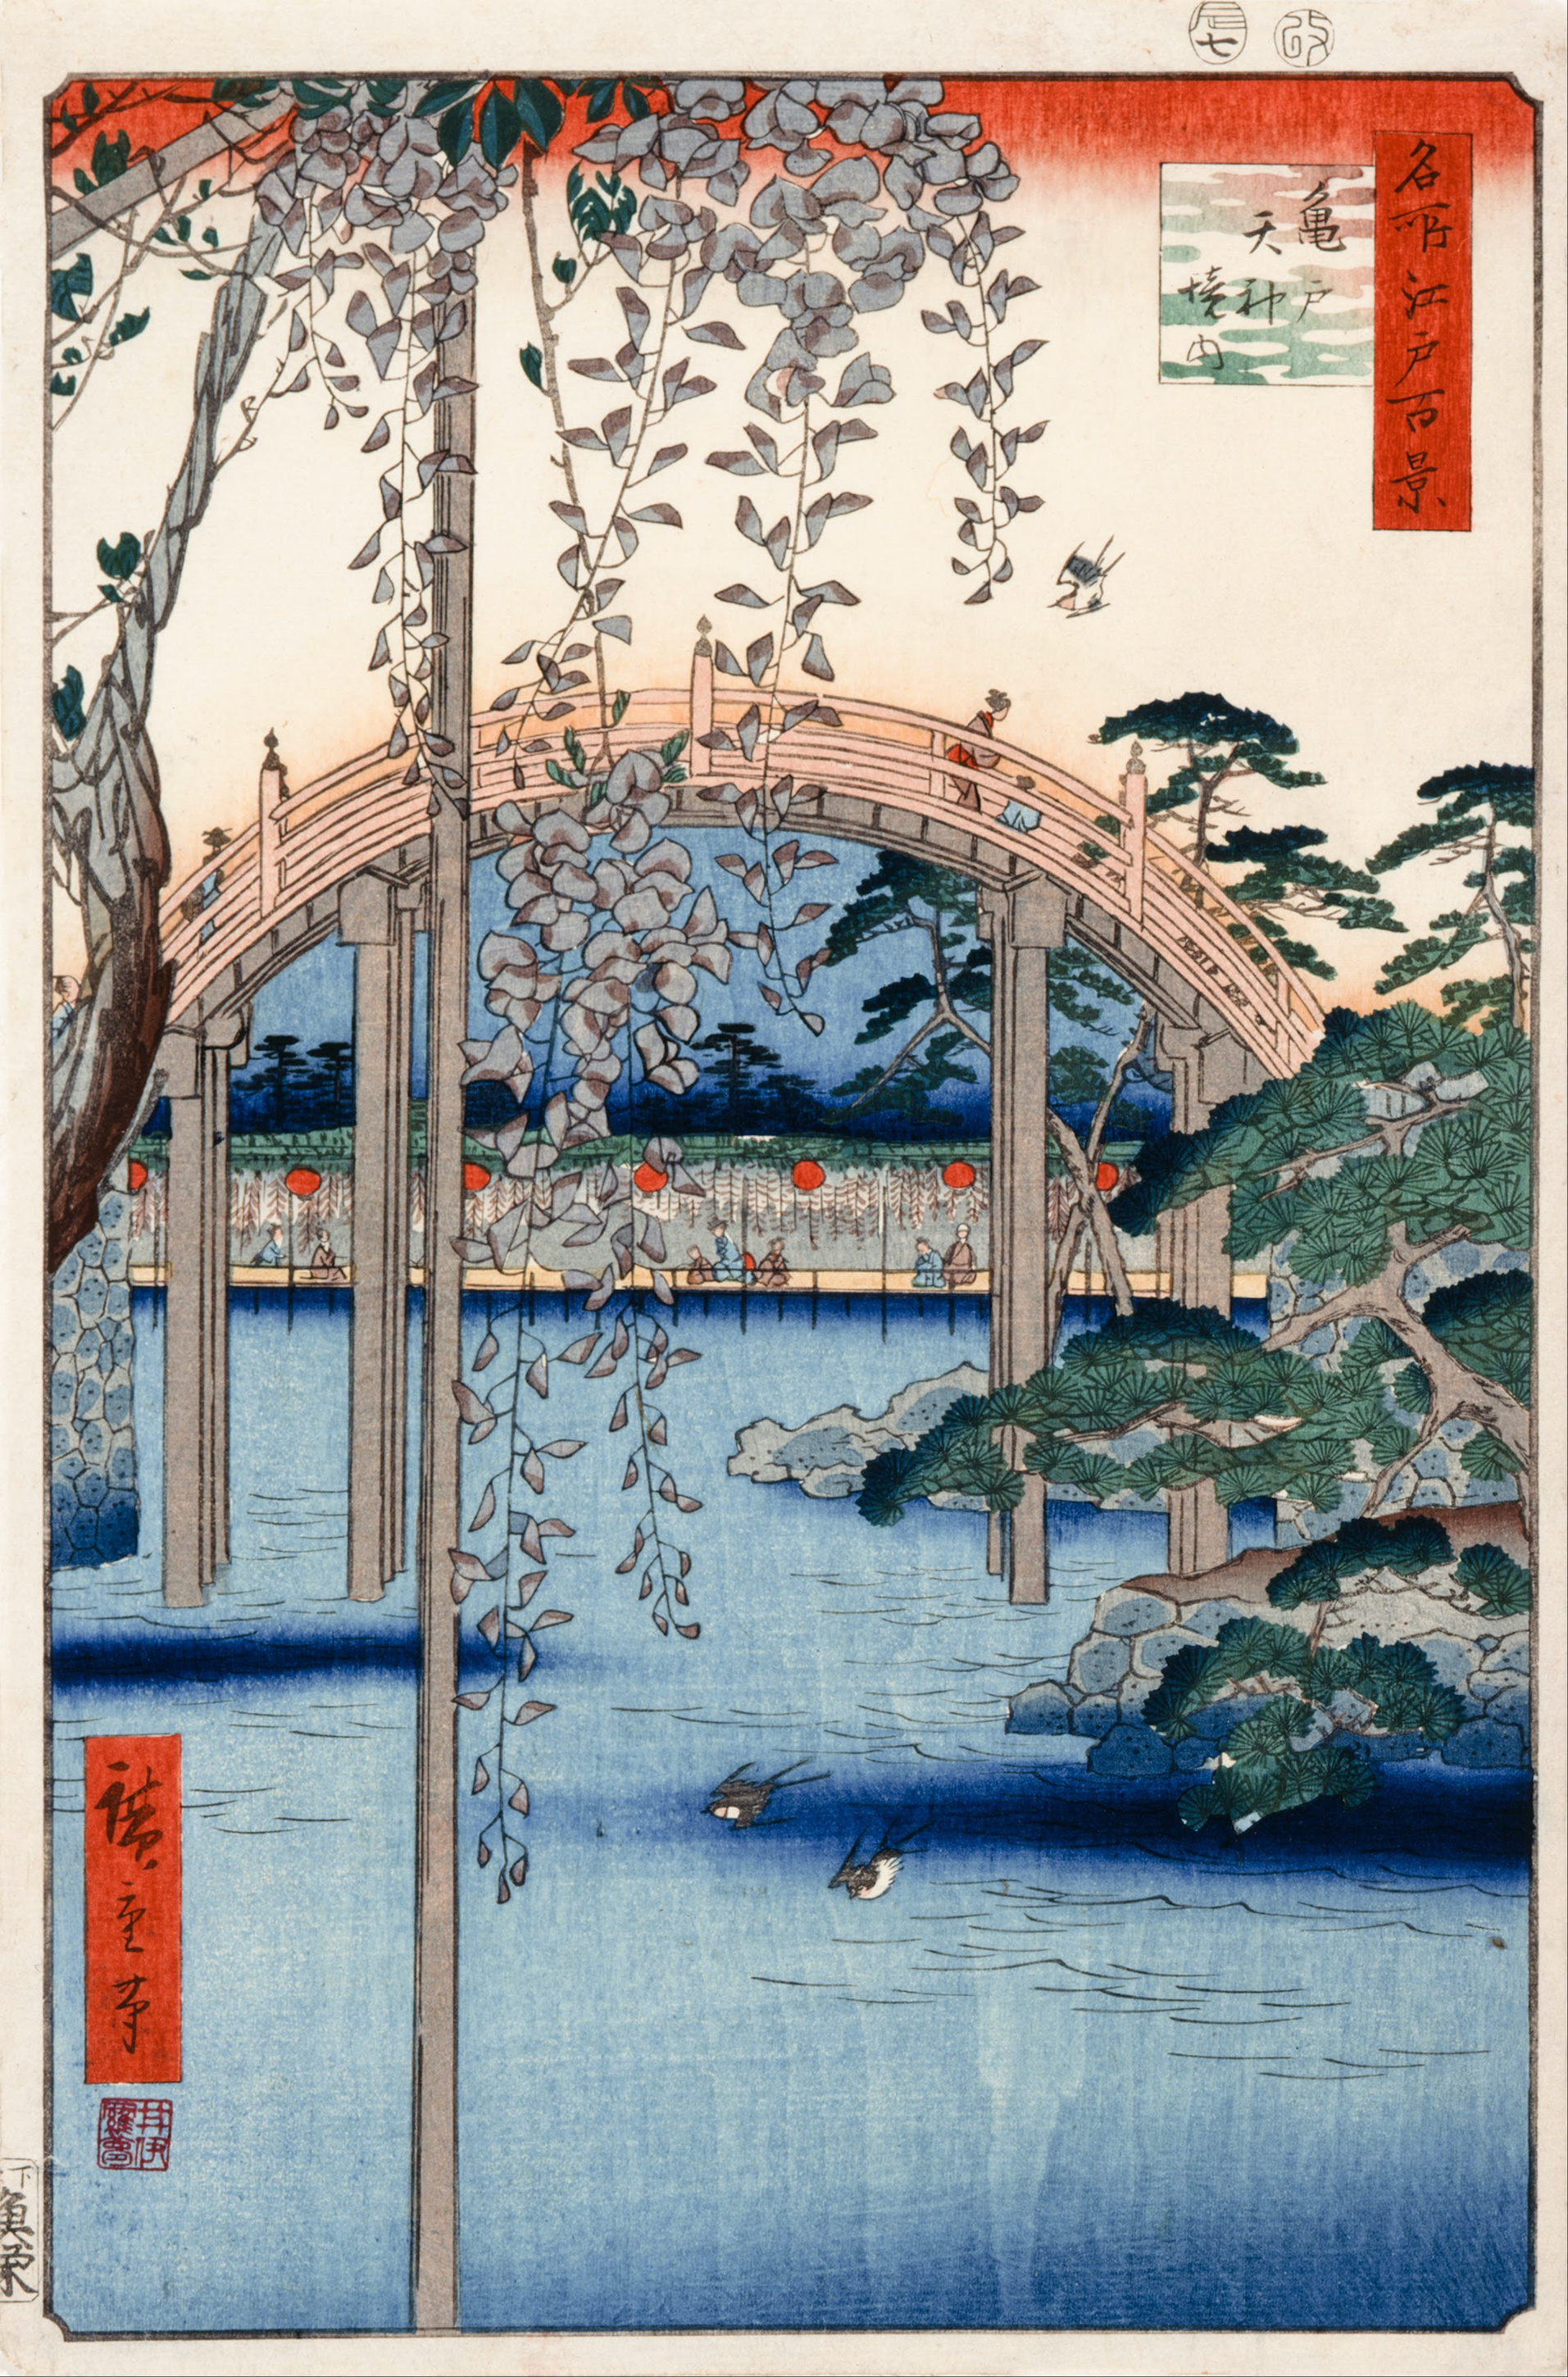 № 57, територія храму Камейдо Тенджін by  Hiroshige - 1856 - 34 x 22.9 см 